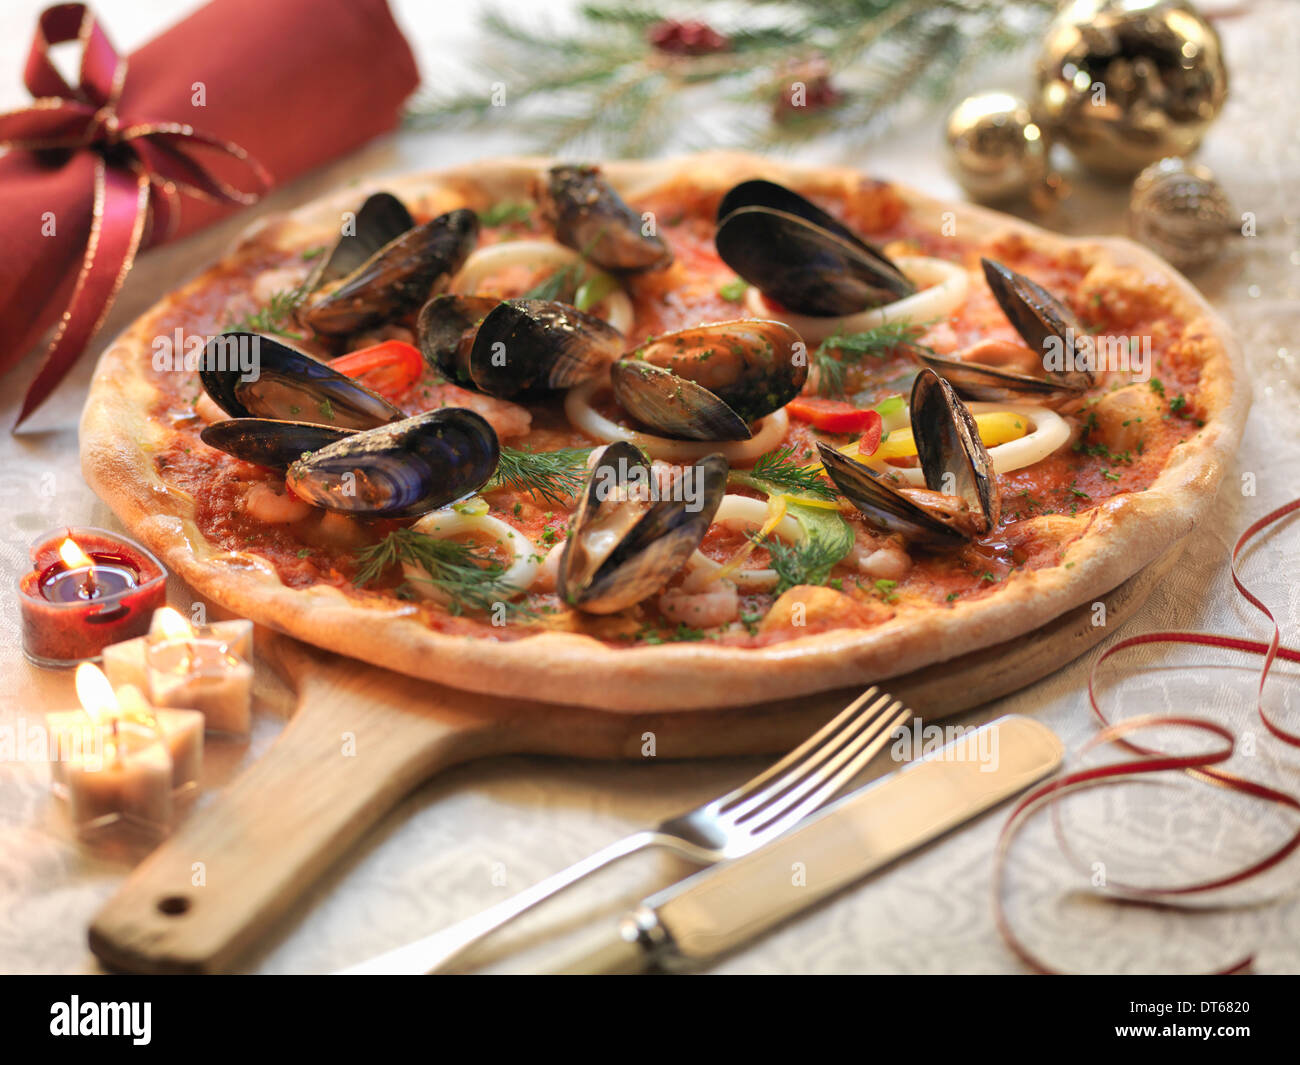 Mariscos pizza casera rematada con calamares, gambas y mejillones con decoraciones festivas Foto de stock